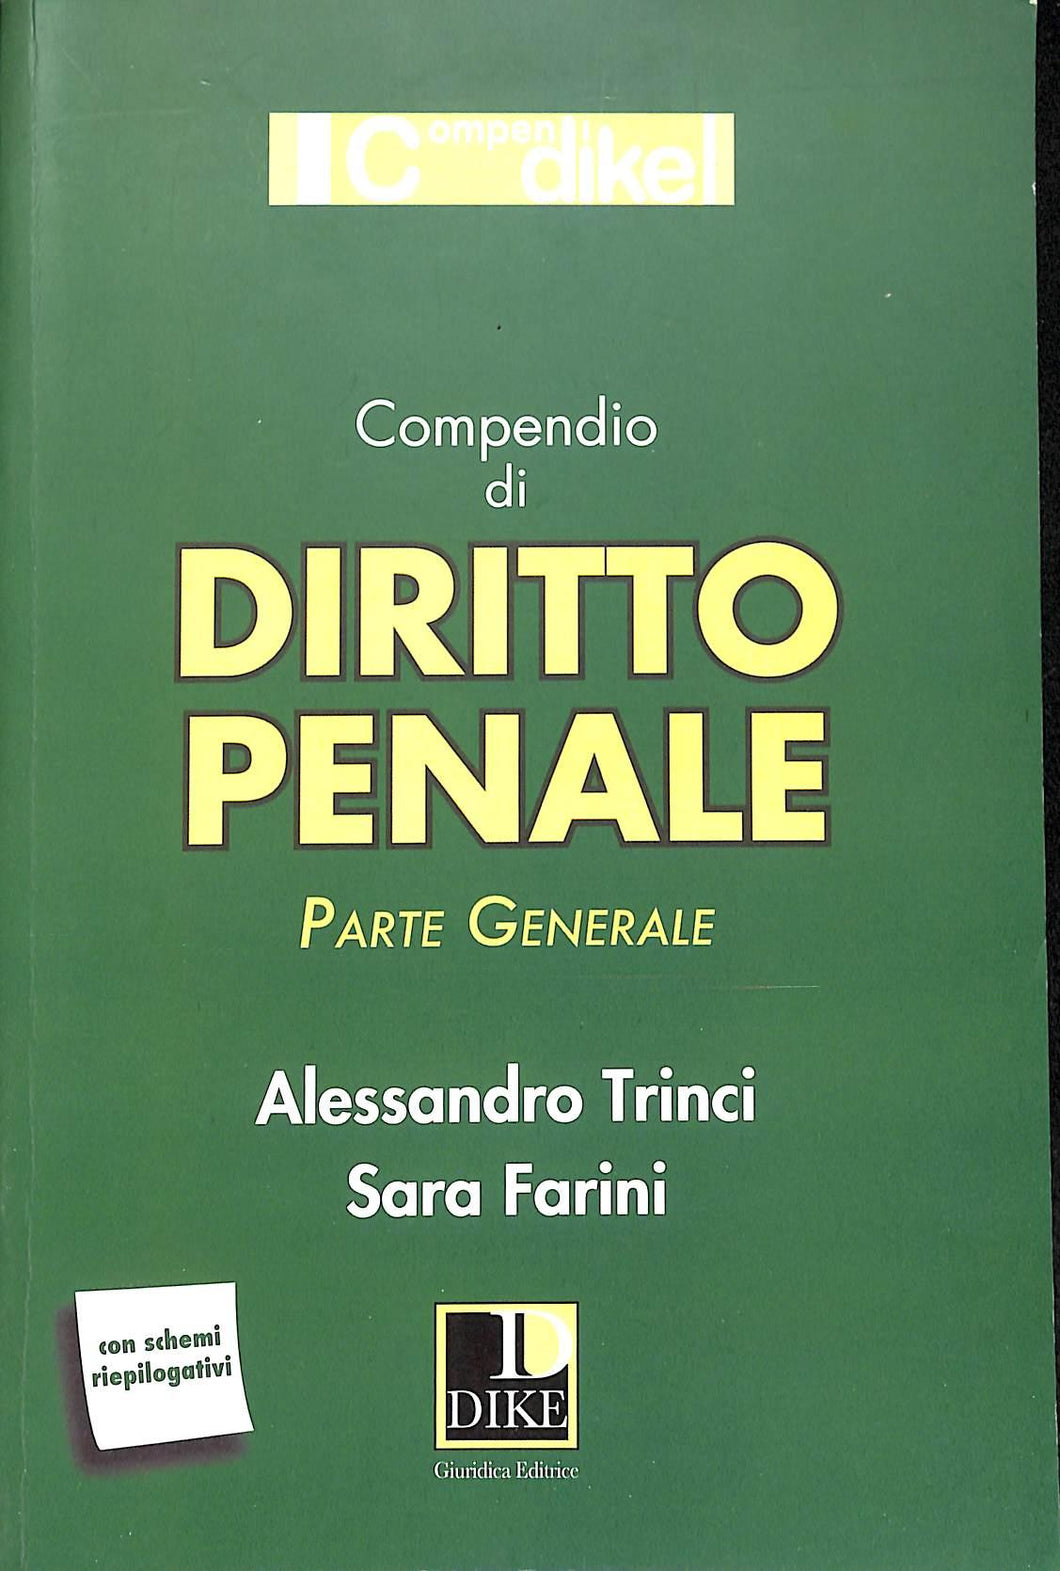 Compendio di diritto penale. Parte generale 2014
/ Sara Farini, Alessandro Trinci